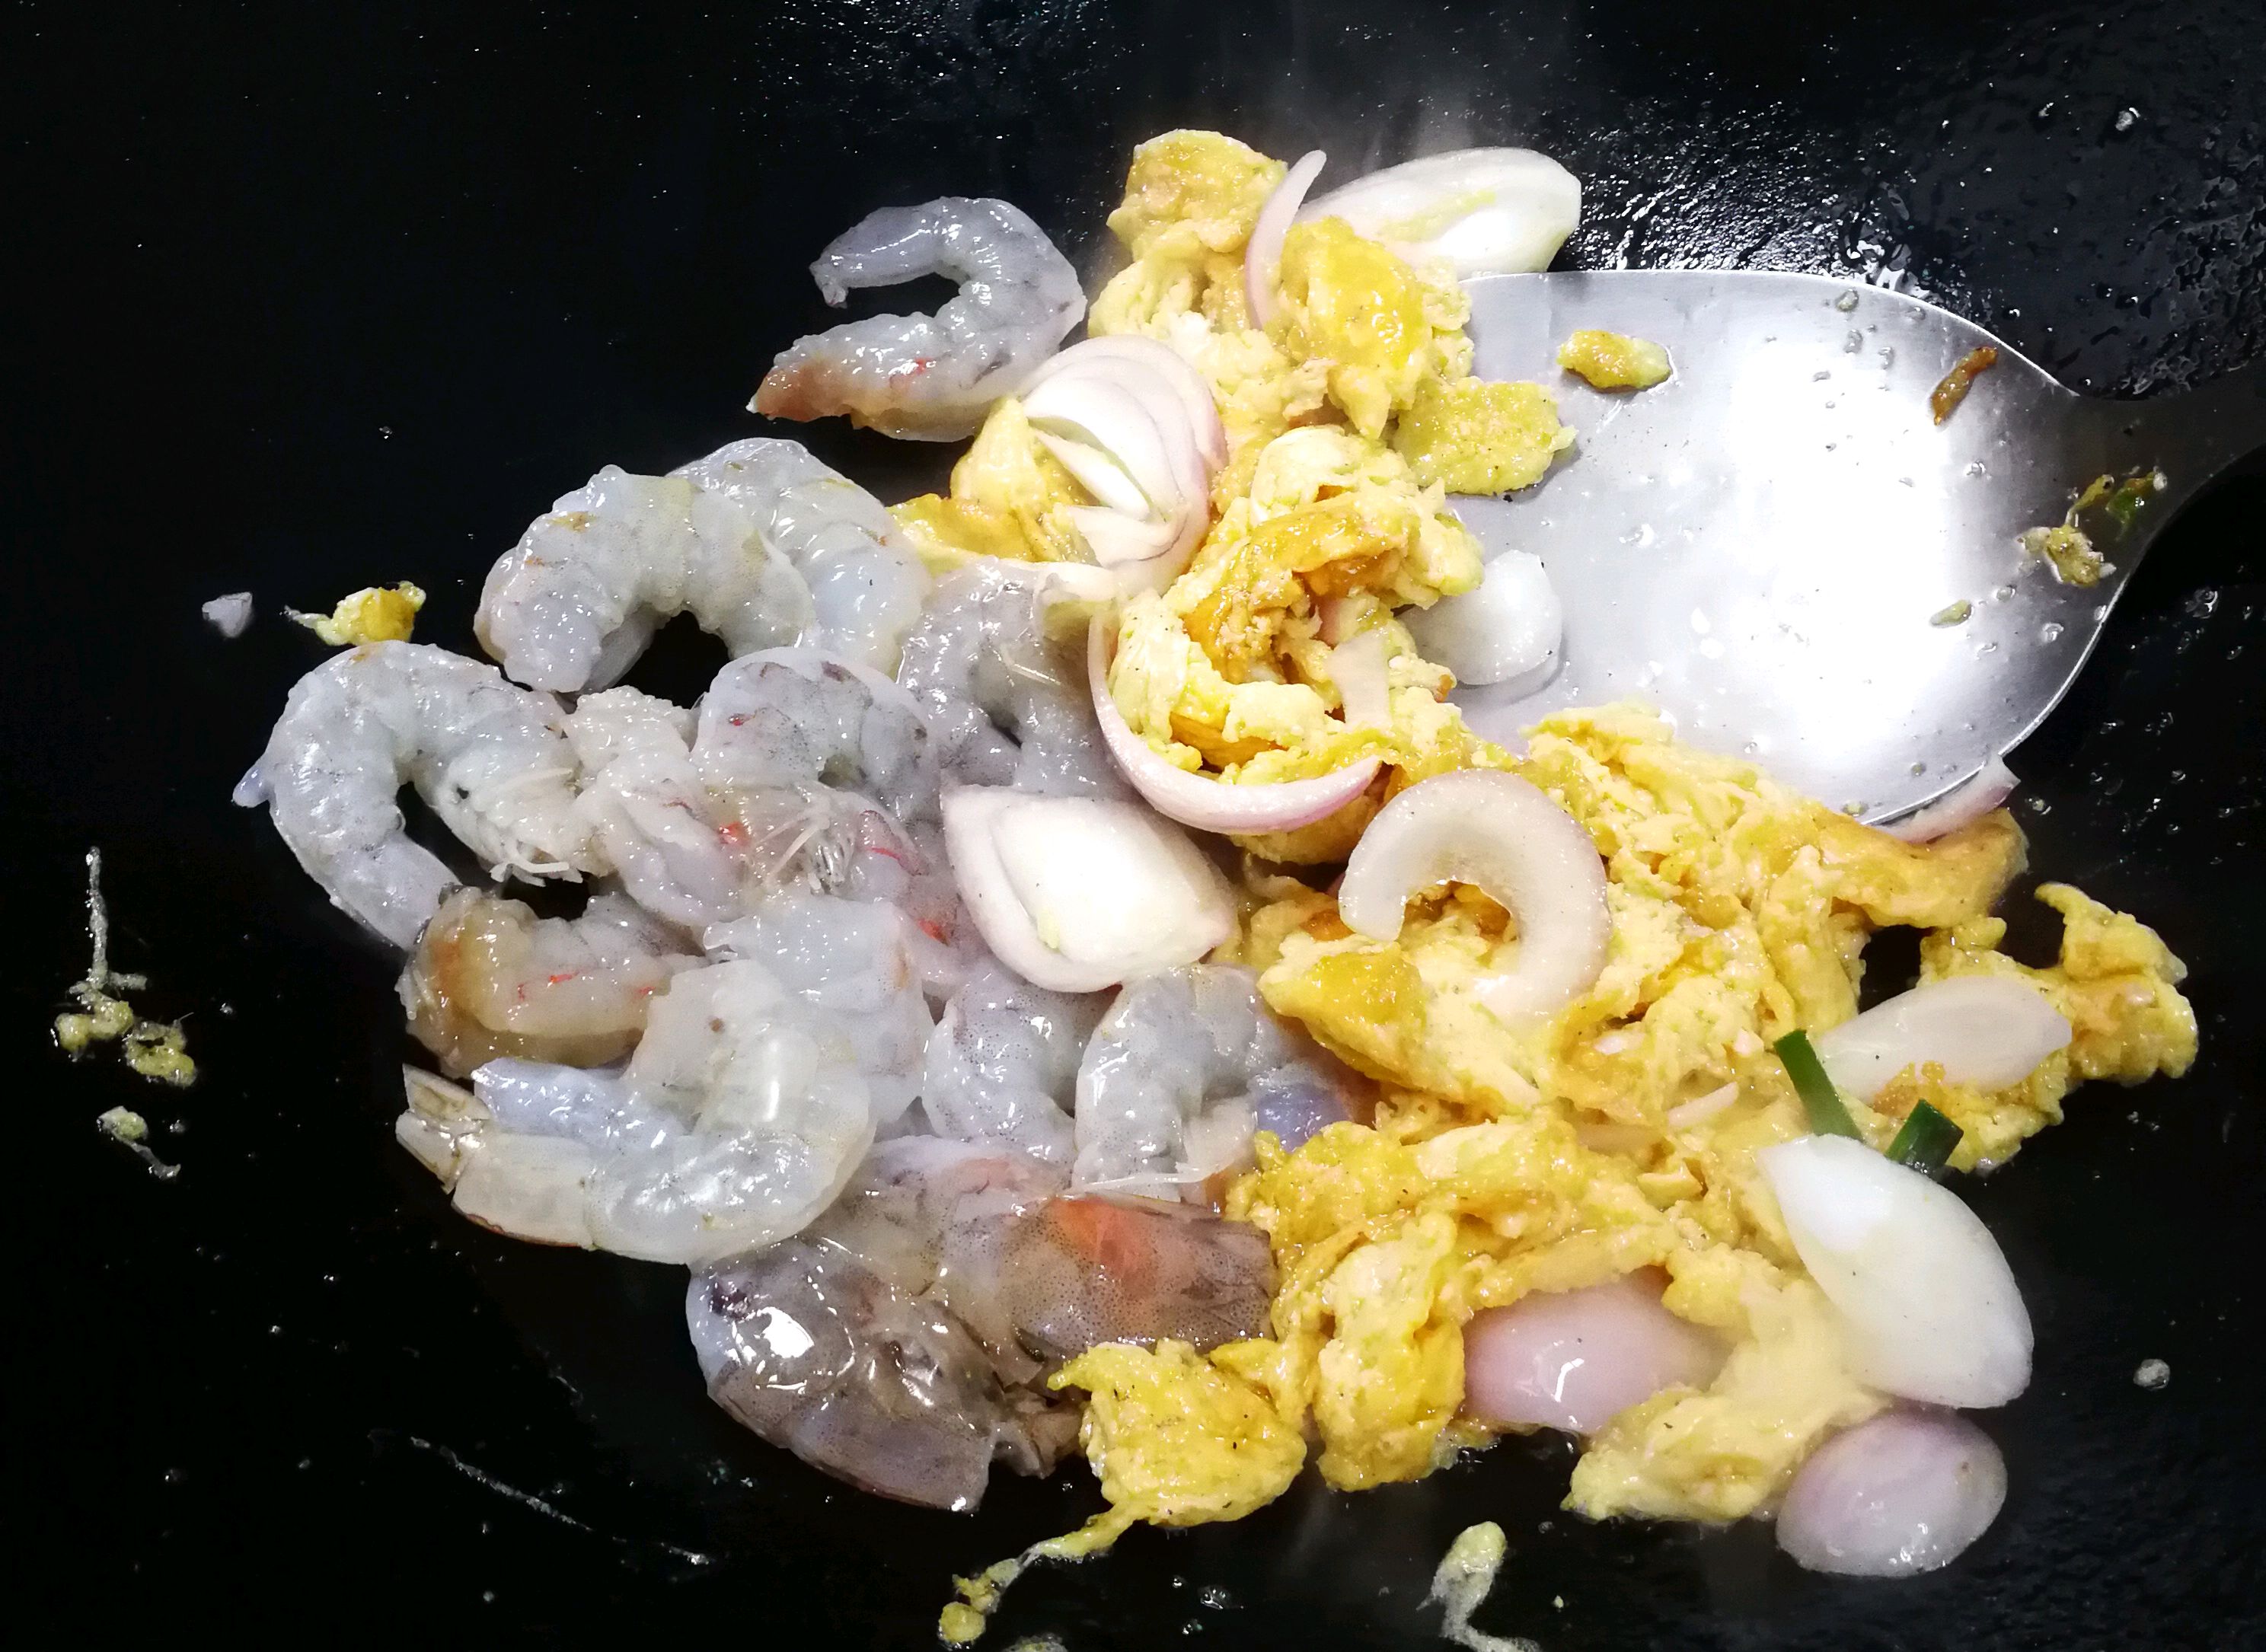 洋葱,炒至半熟后,便可以往锅中倒入处理好的虾仁